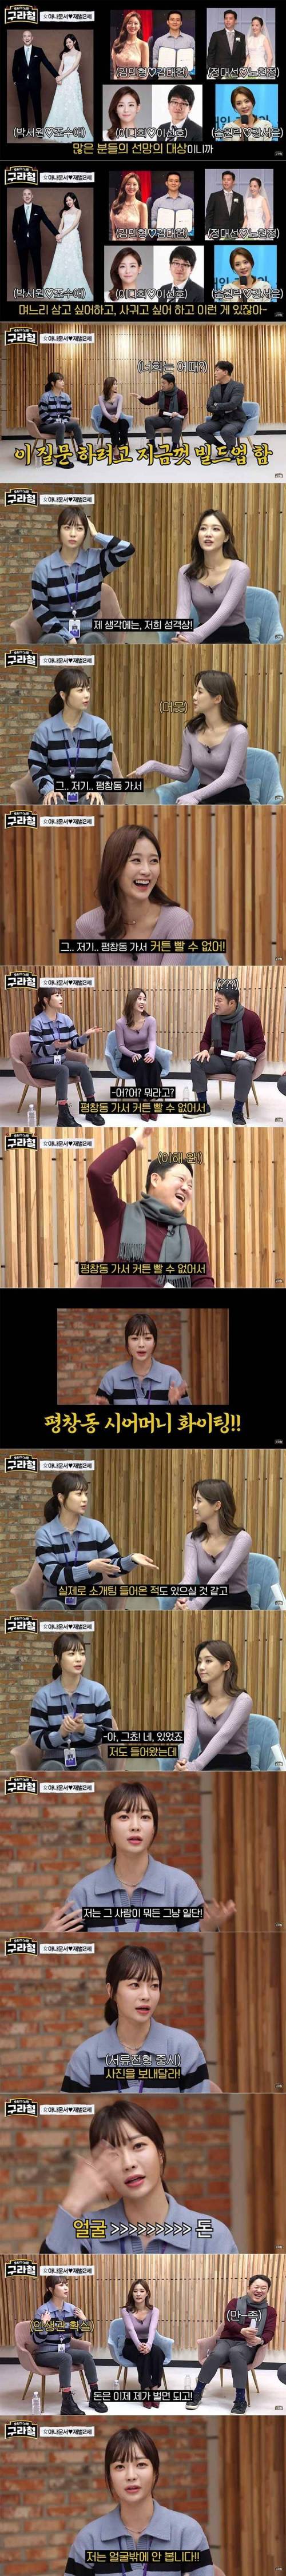 MBC 박지민 아나운서가 재벌가 소개팅에 관심이 없는 이유